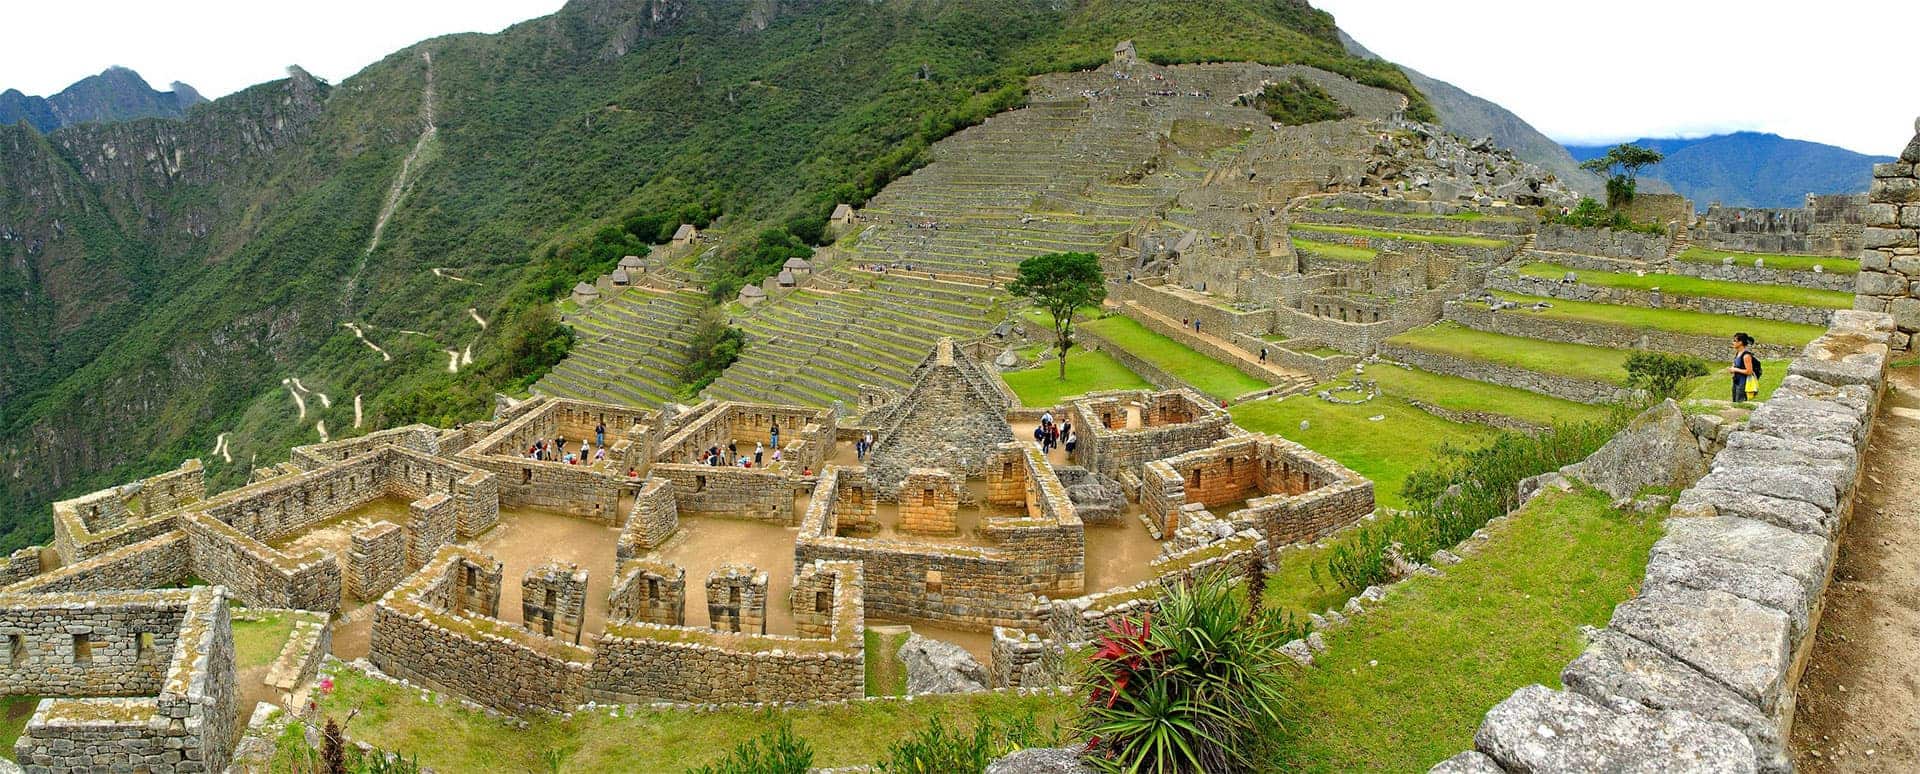 Short Inca Trail - Machu Pichu ruins